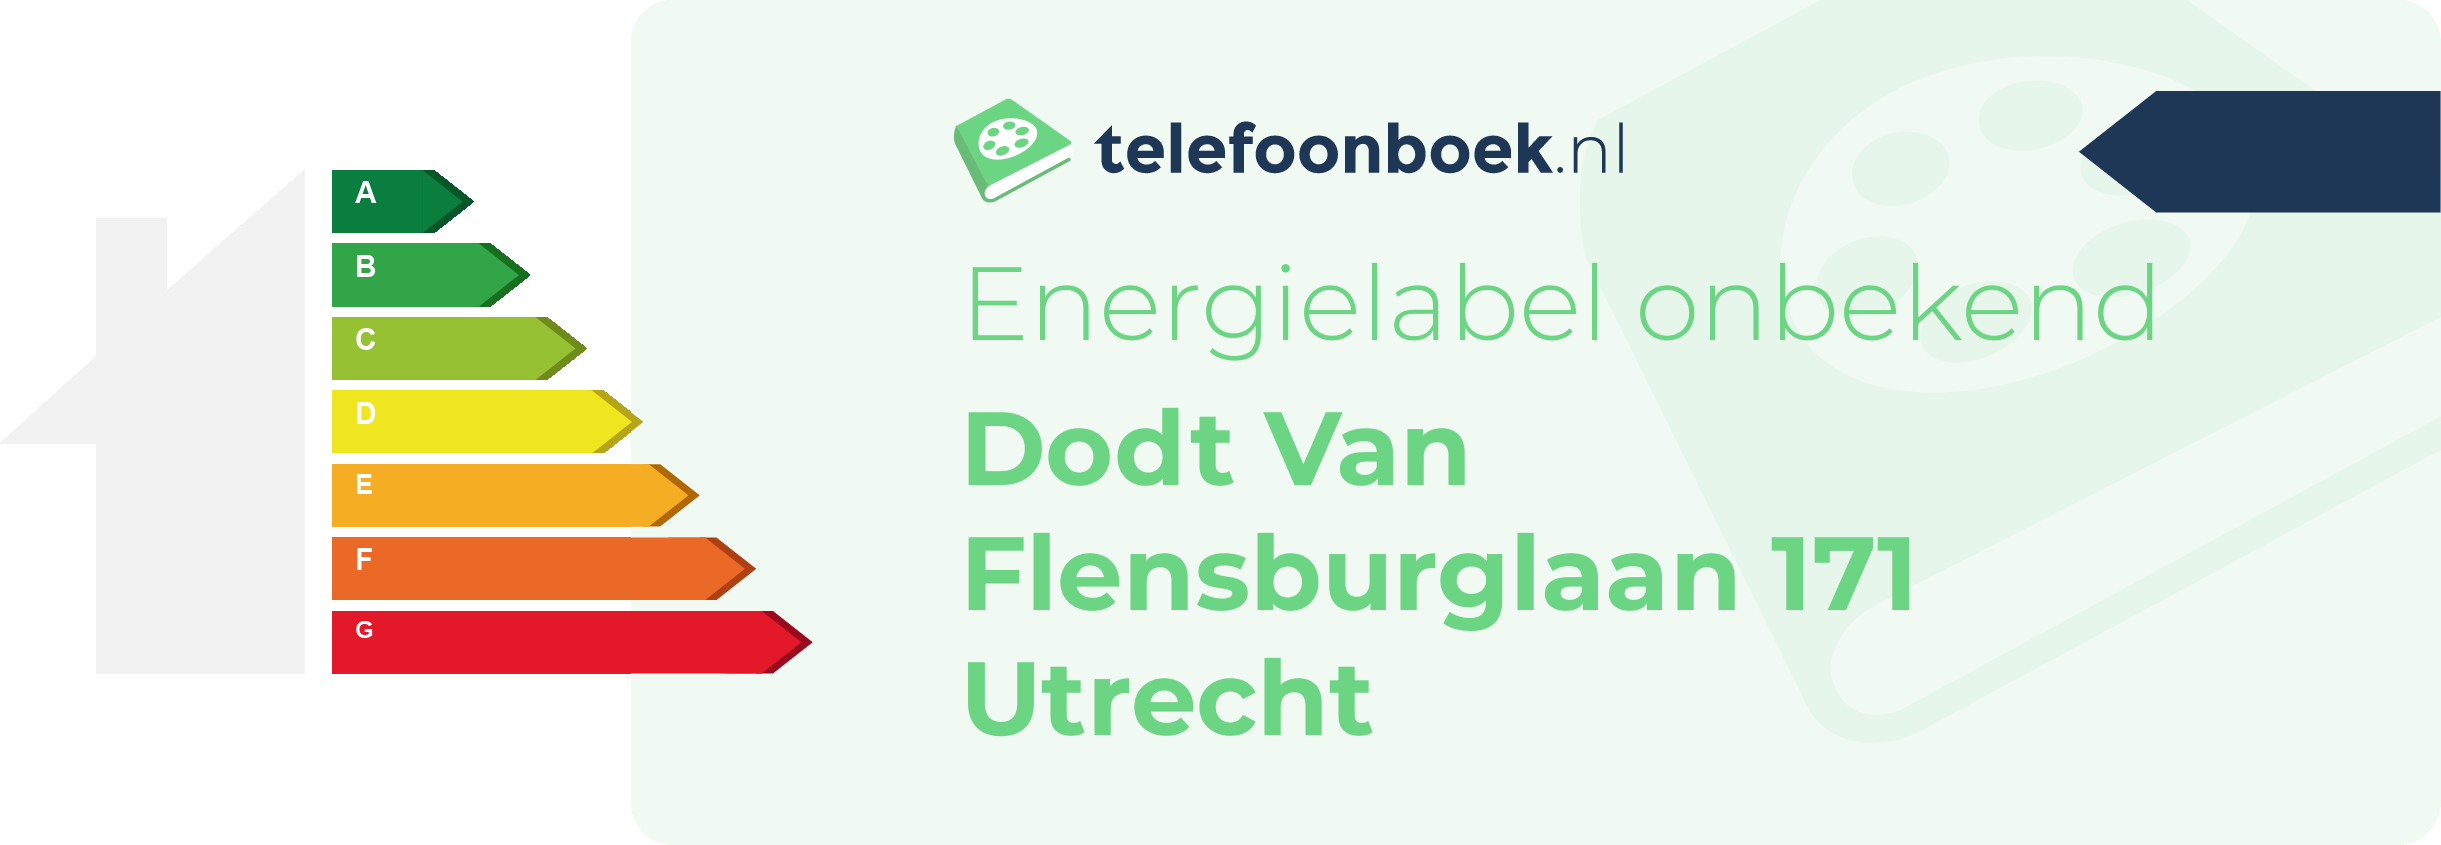 Energielabel Dodt Van Flensburglaan 171 Utrecht